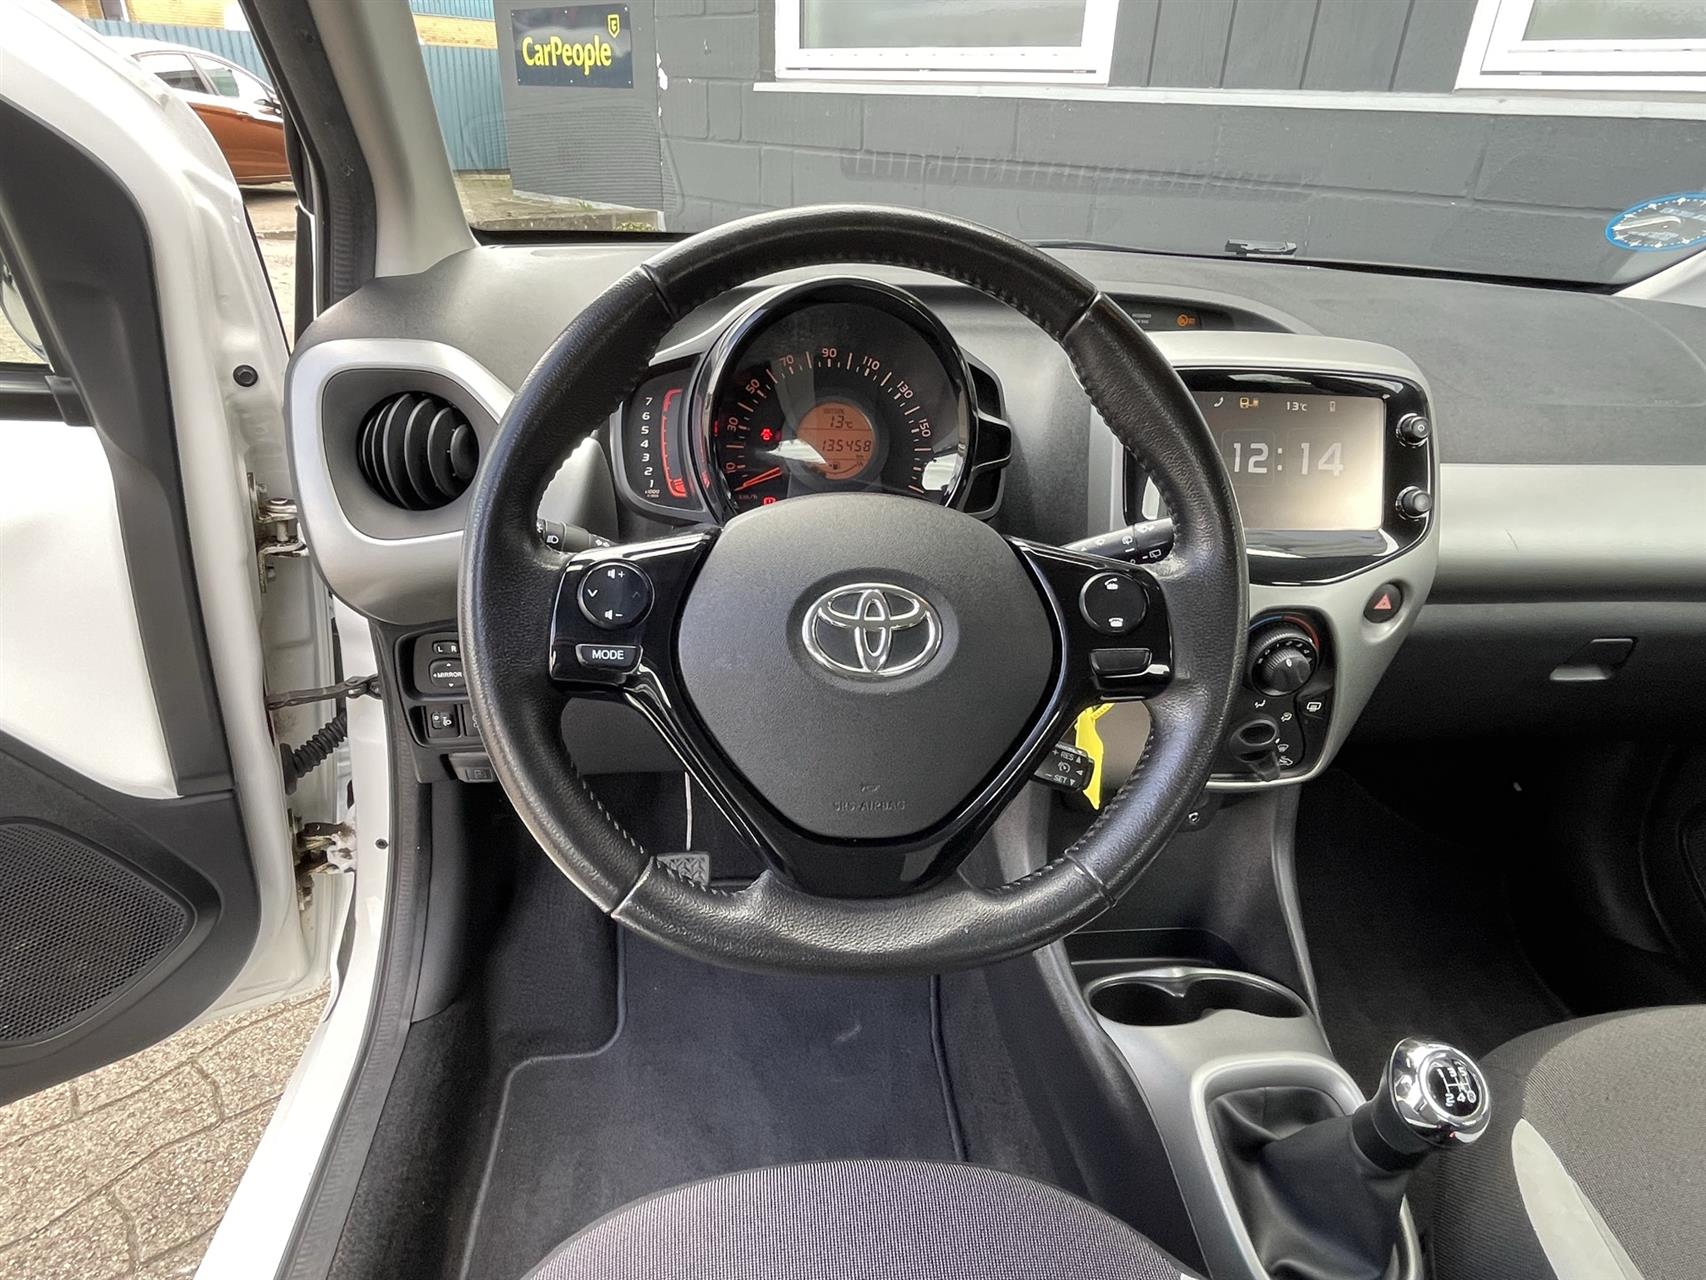 Billede af Toyota Aygo 1,0 VVT-I X-Play + Touch 69HK 5d